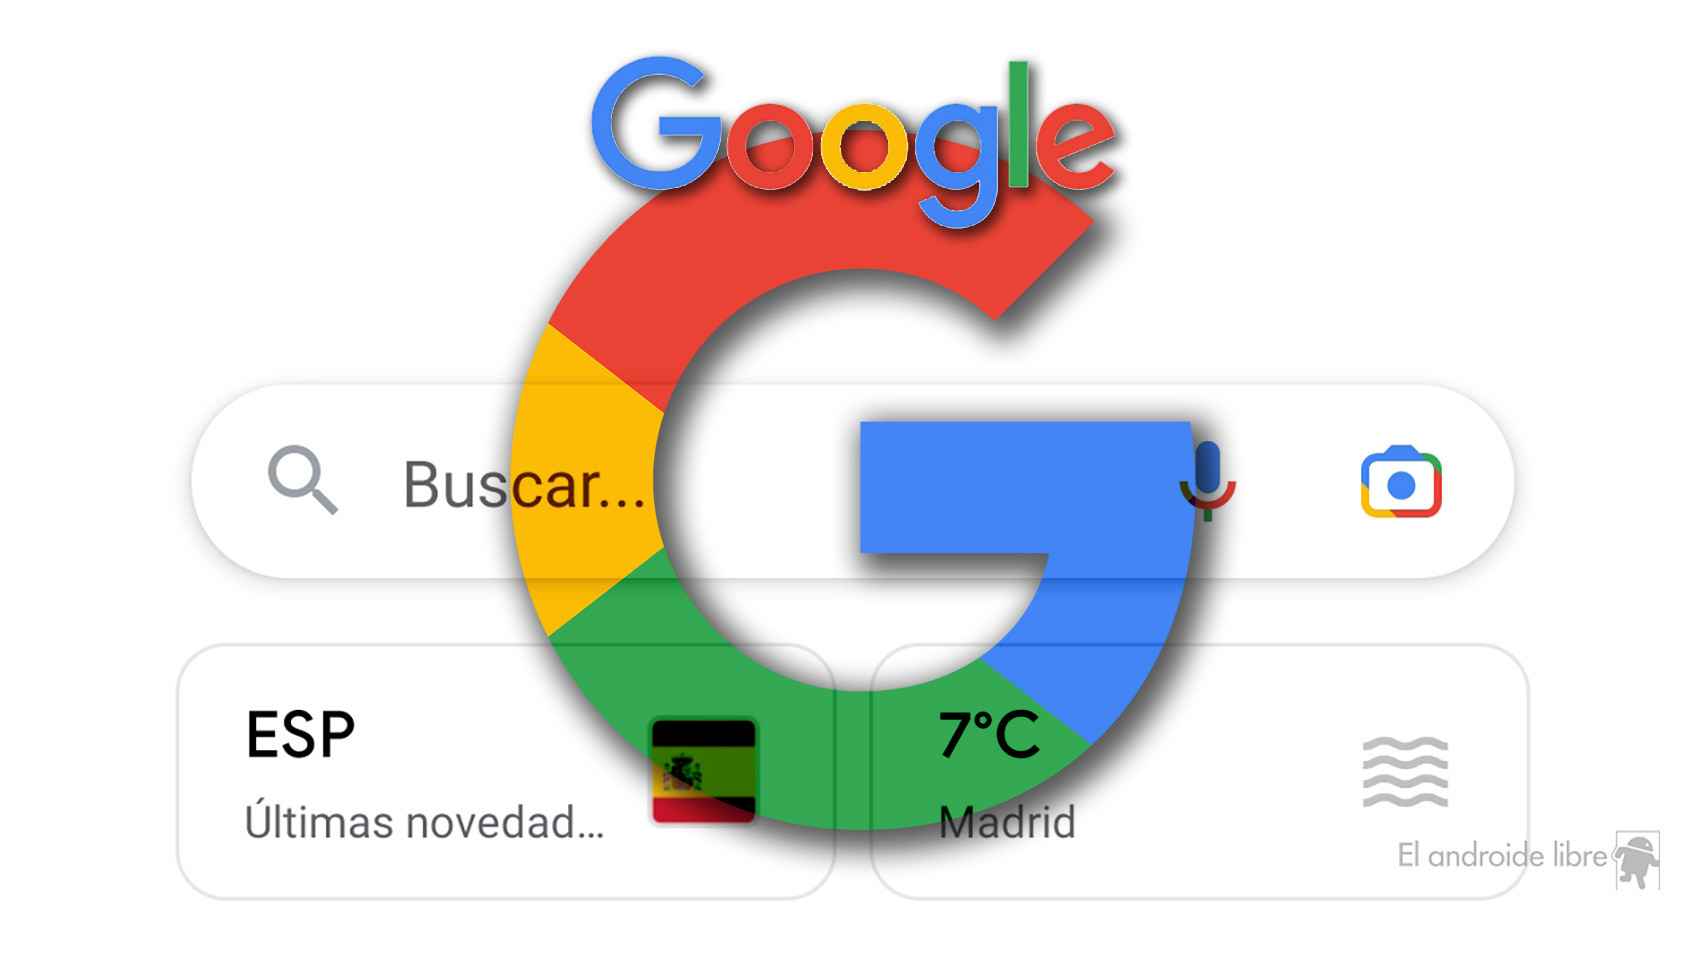 Google Discover en España tiene un aspecto mejorado con nuevas integraciones